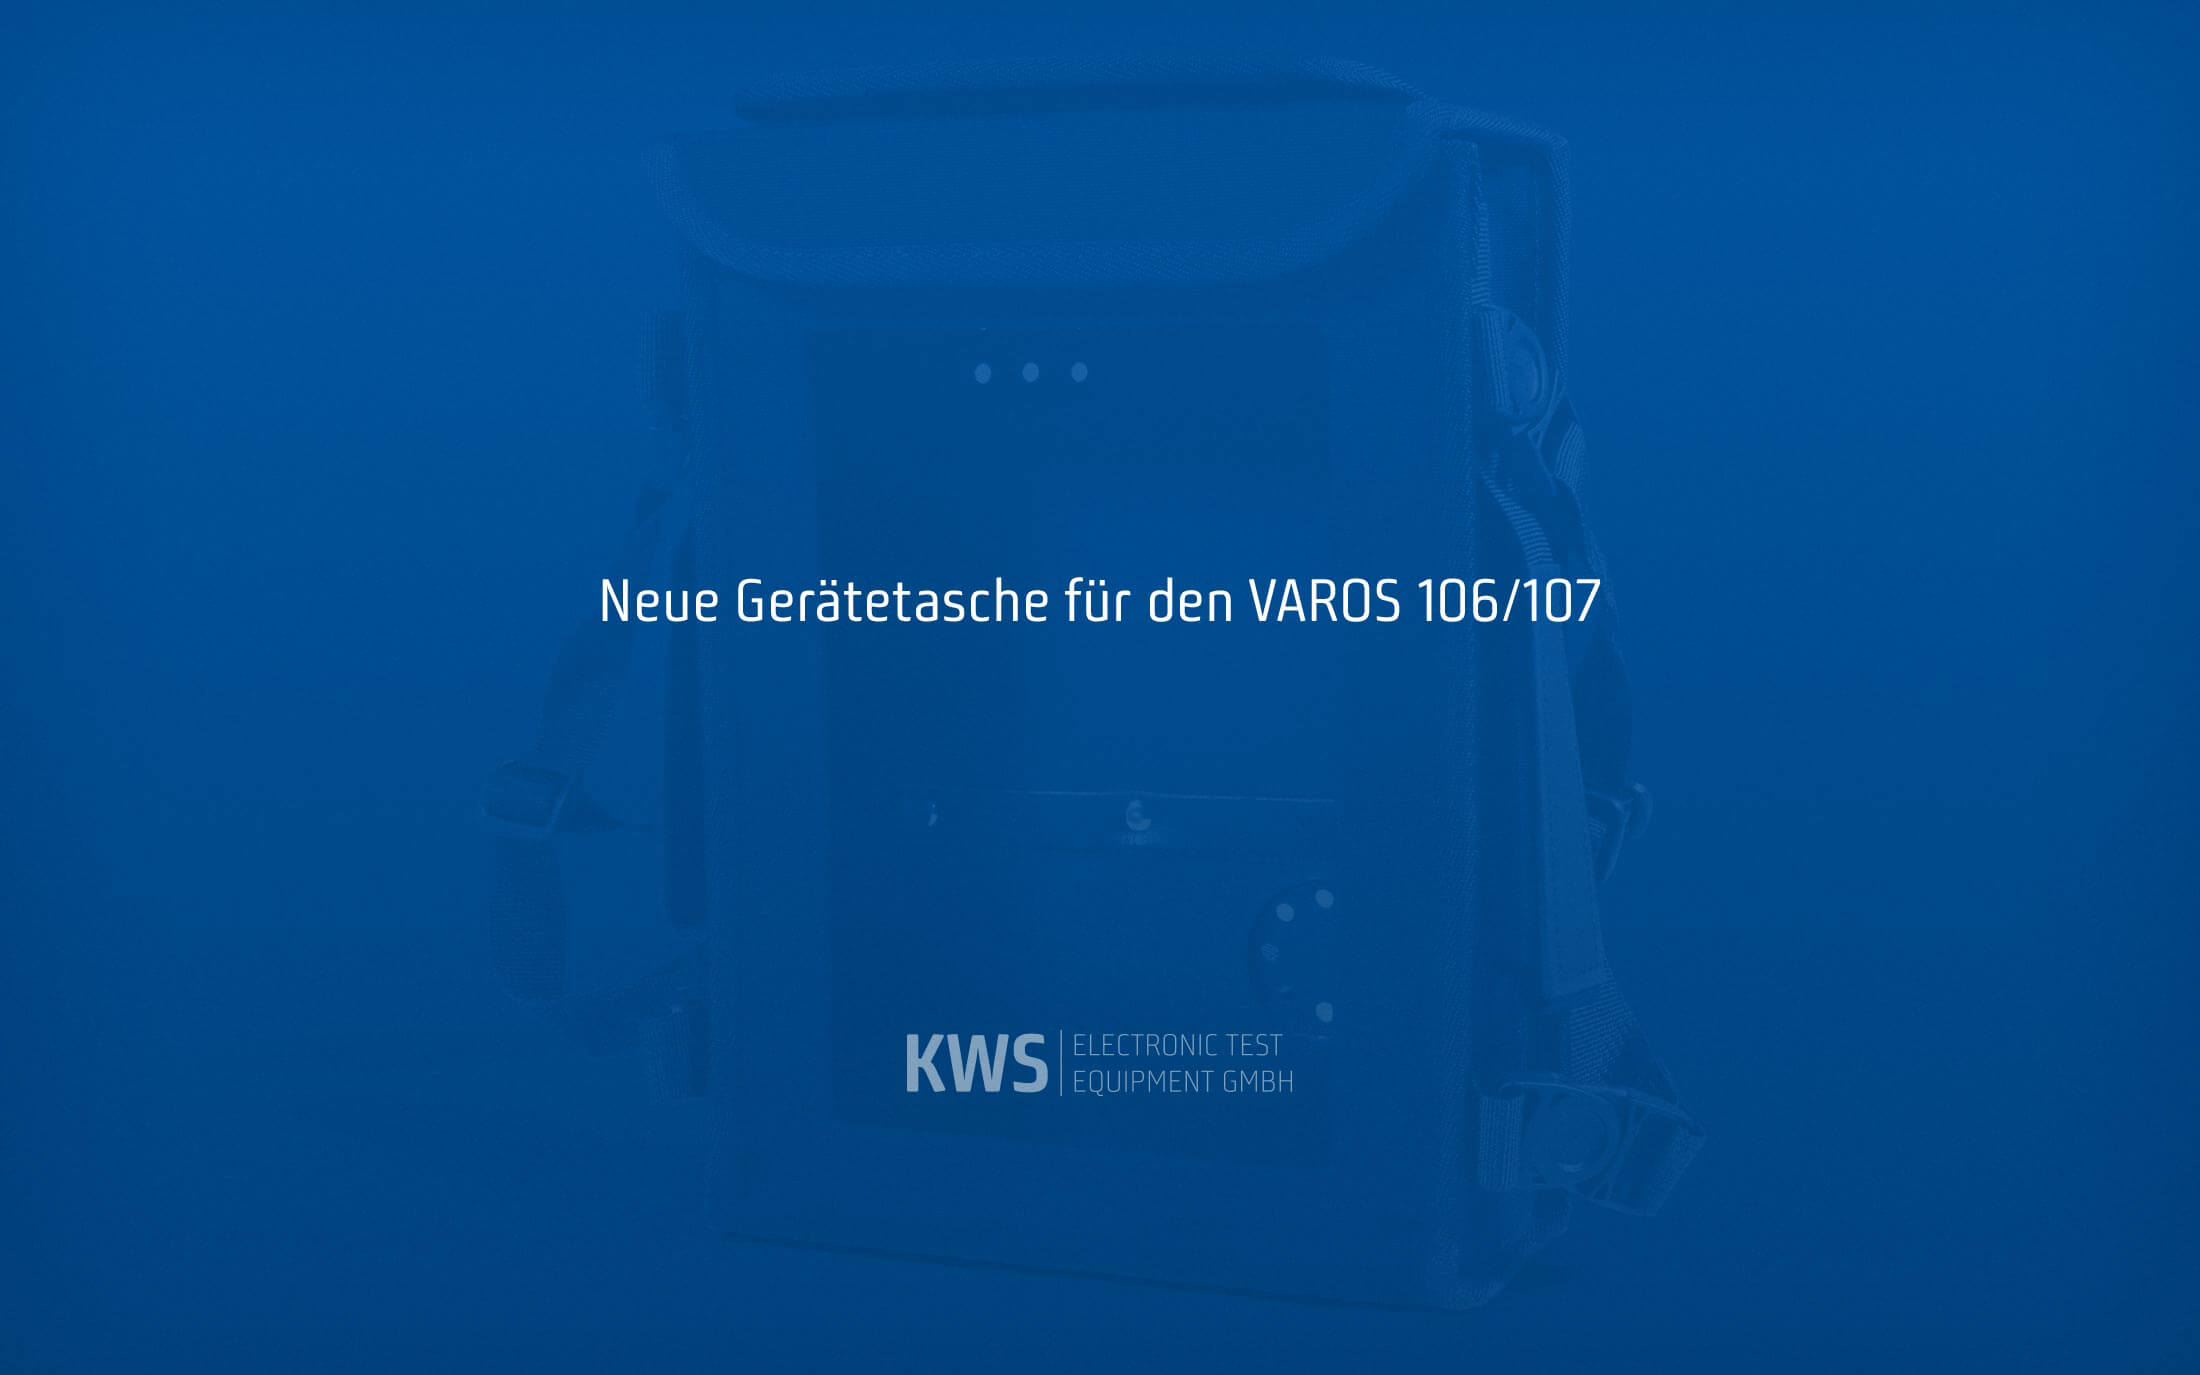 KWS Electronic News 2021: Neue Gerätetasche für VAROS 106 und VAROS 107